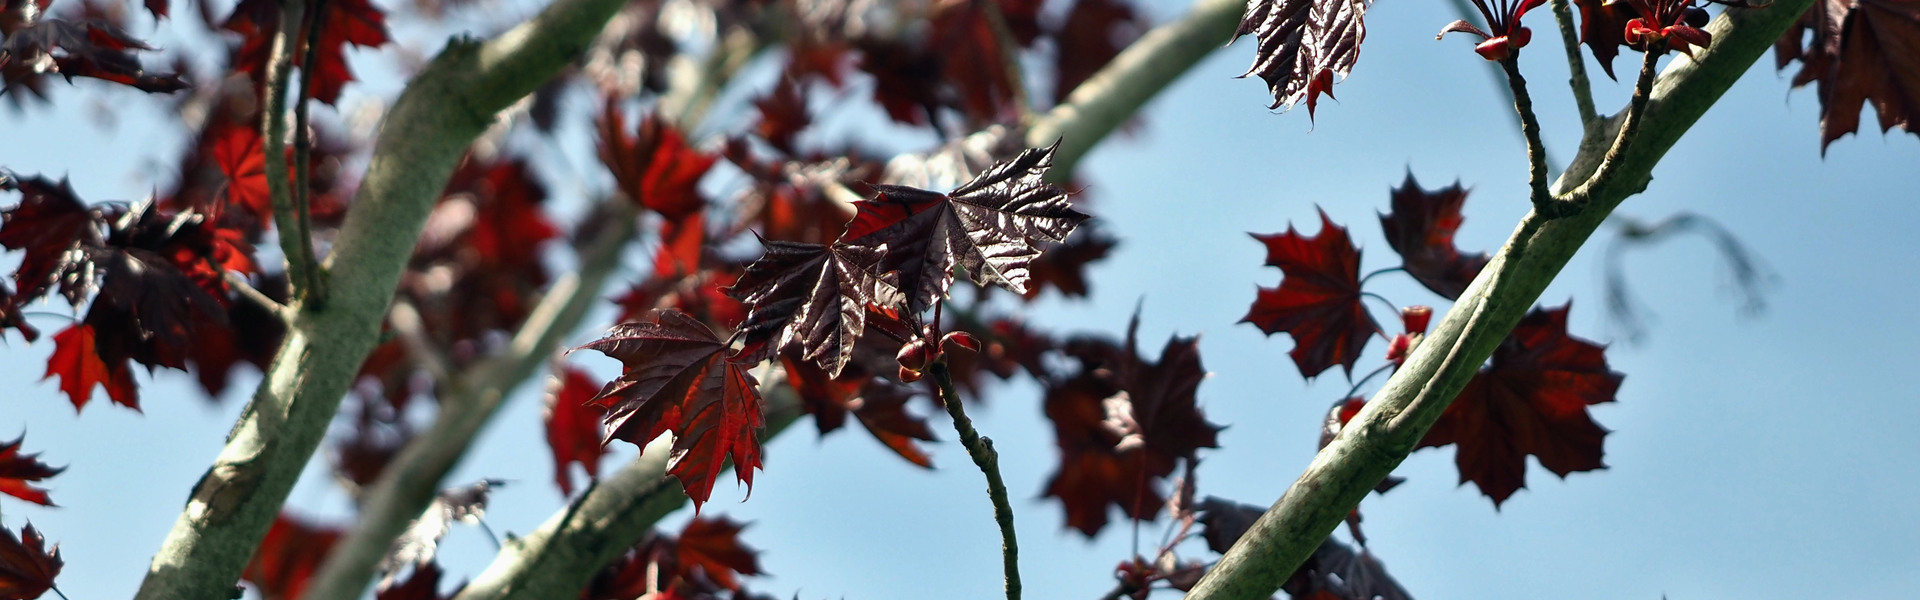 Den rödbladiga skogslönnen i Badhusparken